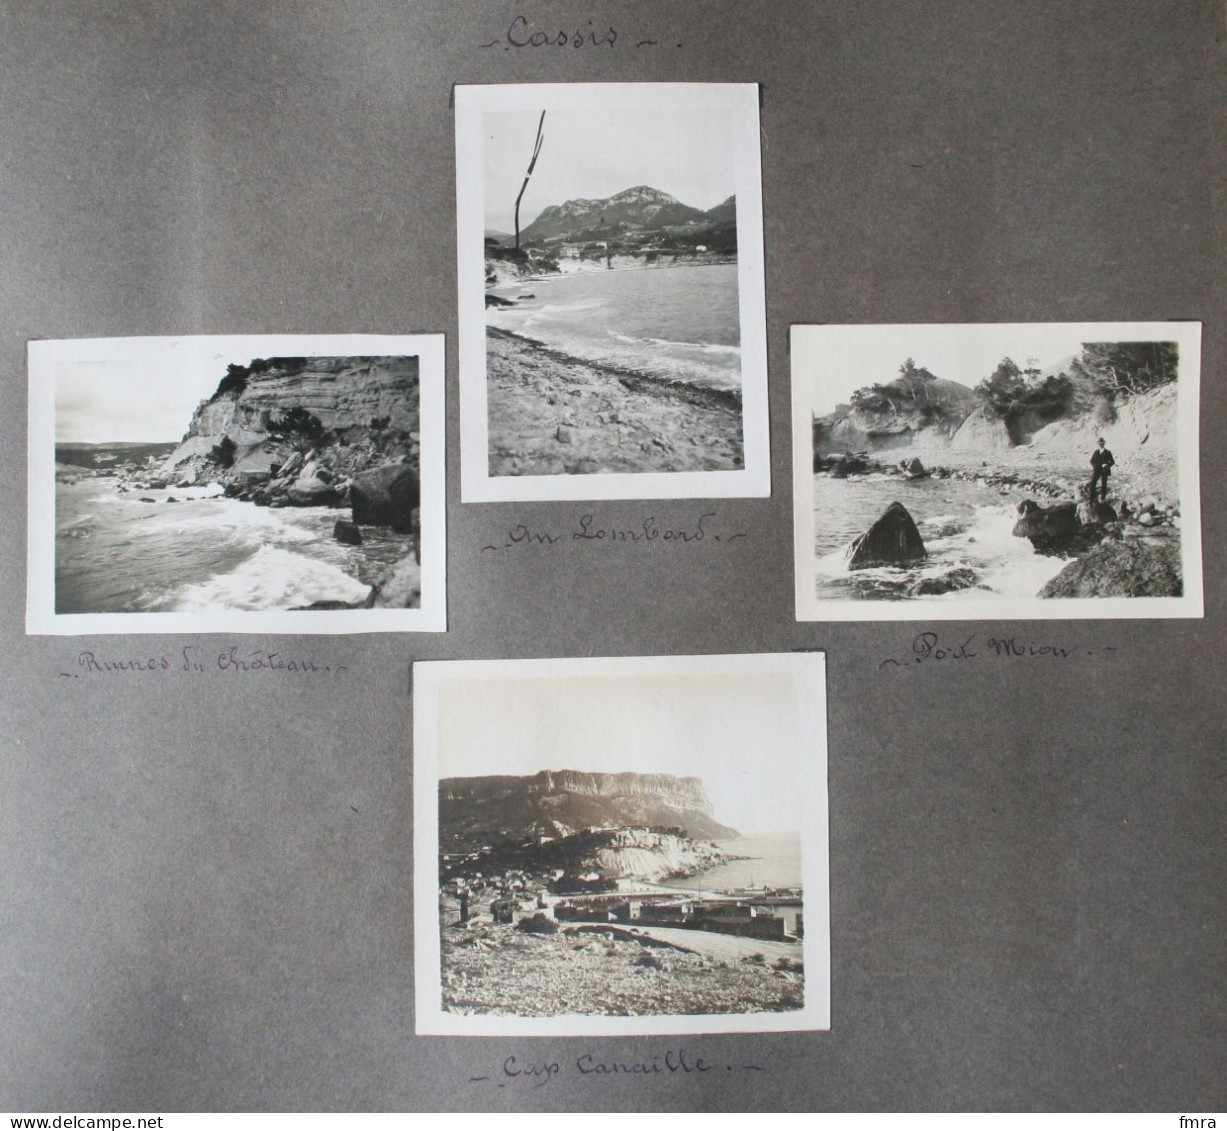 Ensemble de 86 photos (8,8 x 6 cm) 13 – CASSIS – MARSEILLE – 1925-1929 –  (***à voir 21 scans ! ***) /GP87